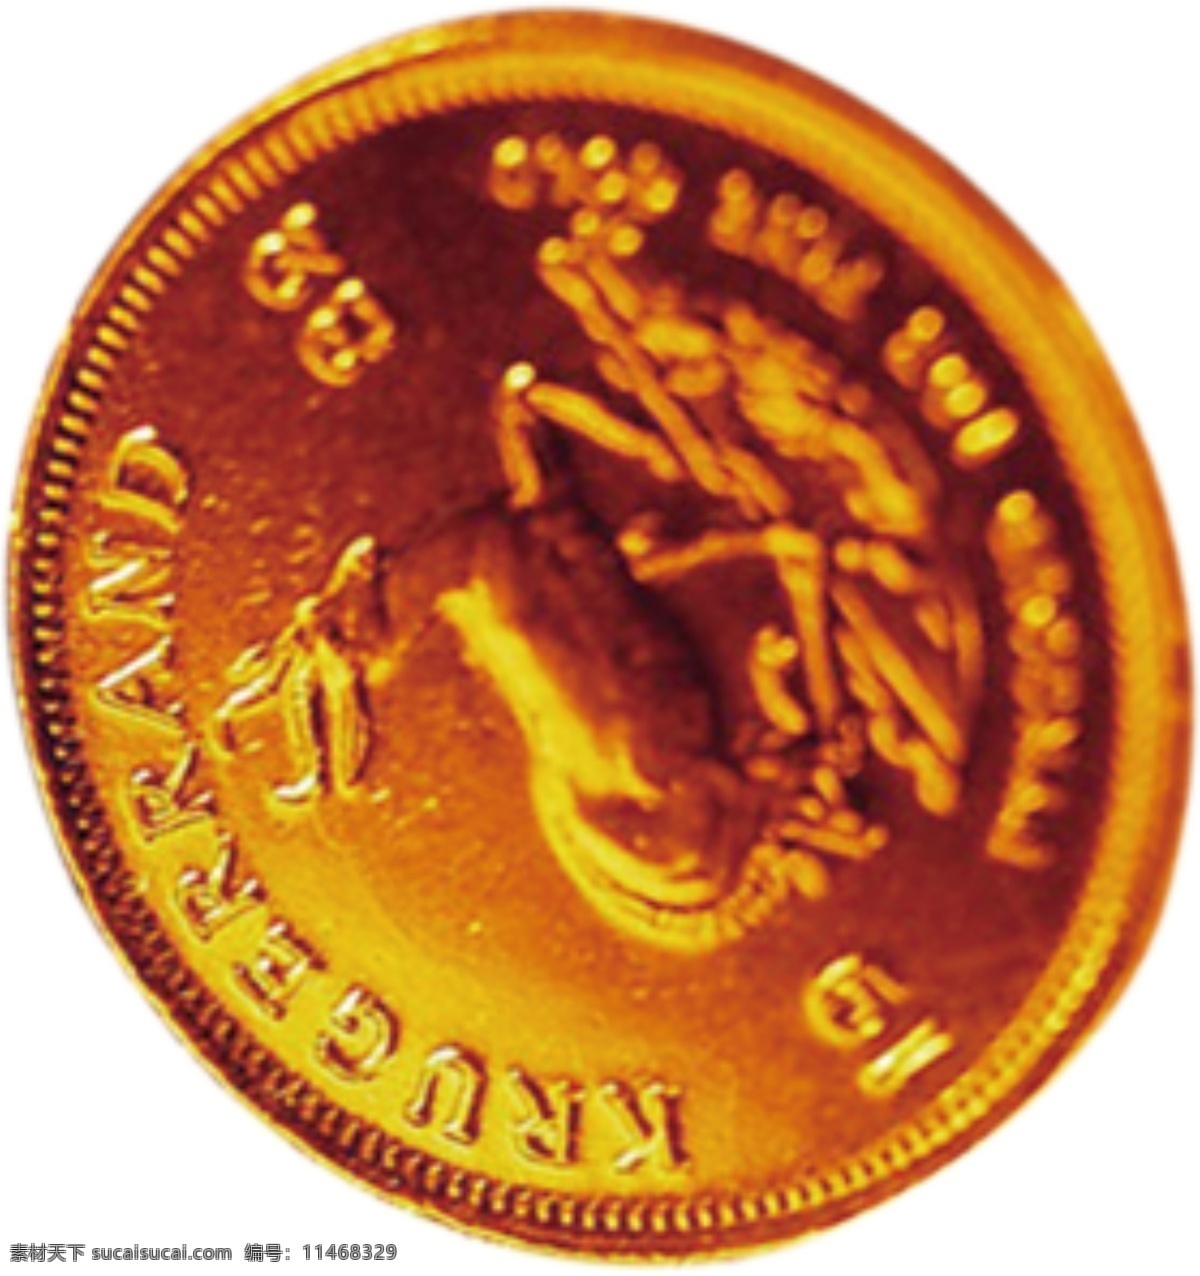 硬币透底素材 硬币透底 钱币 金色硬币 金色钱币 钱币素材 原创设计